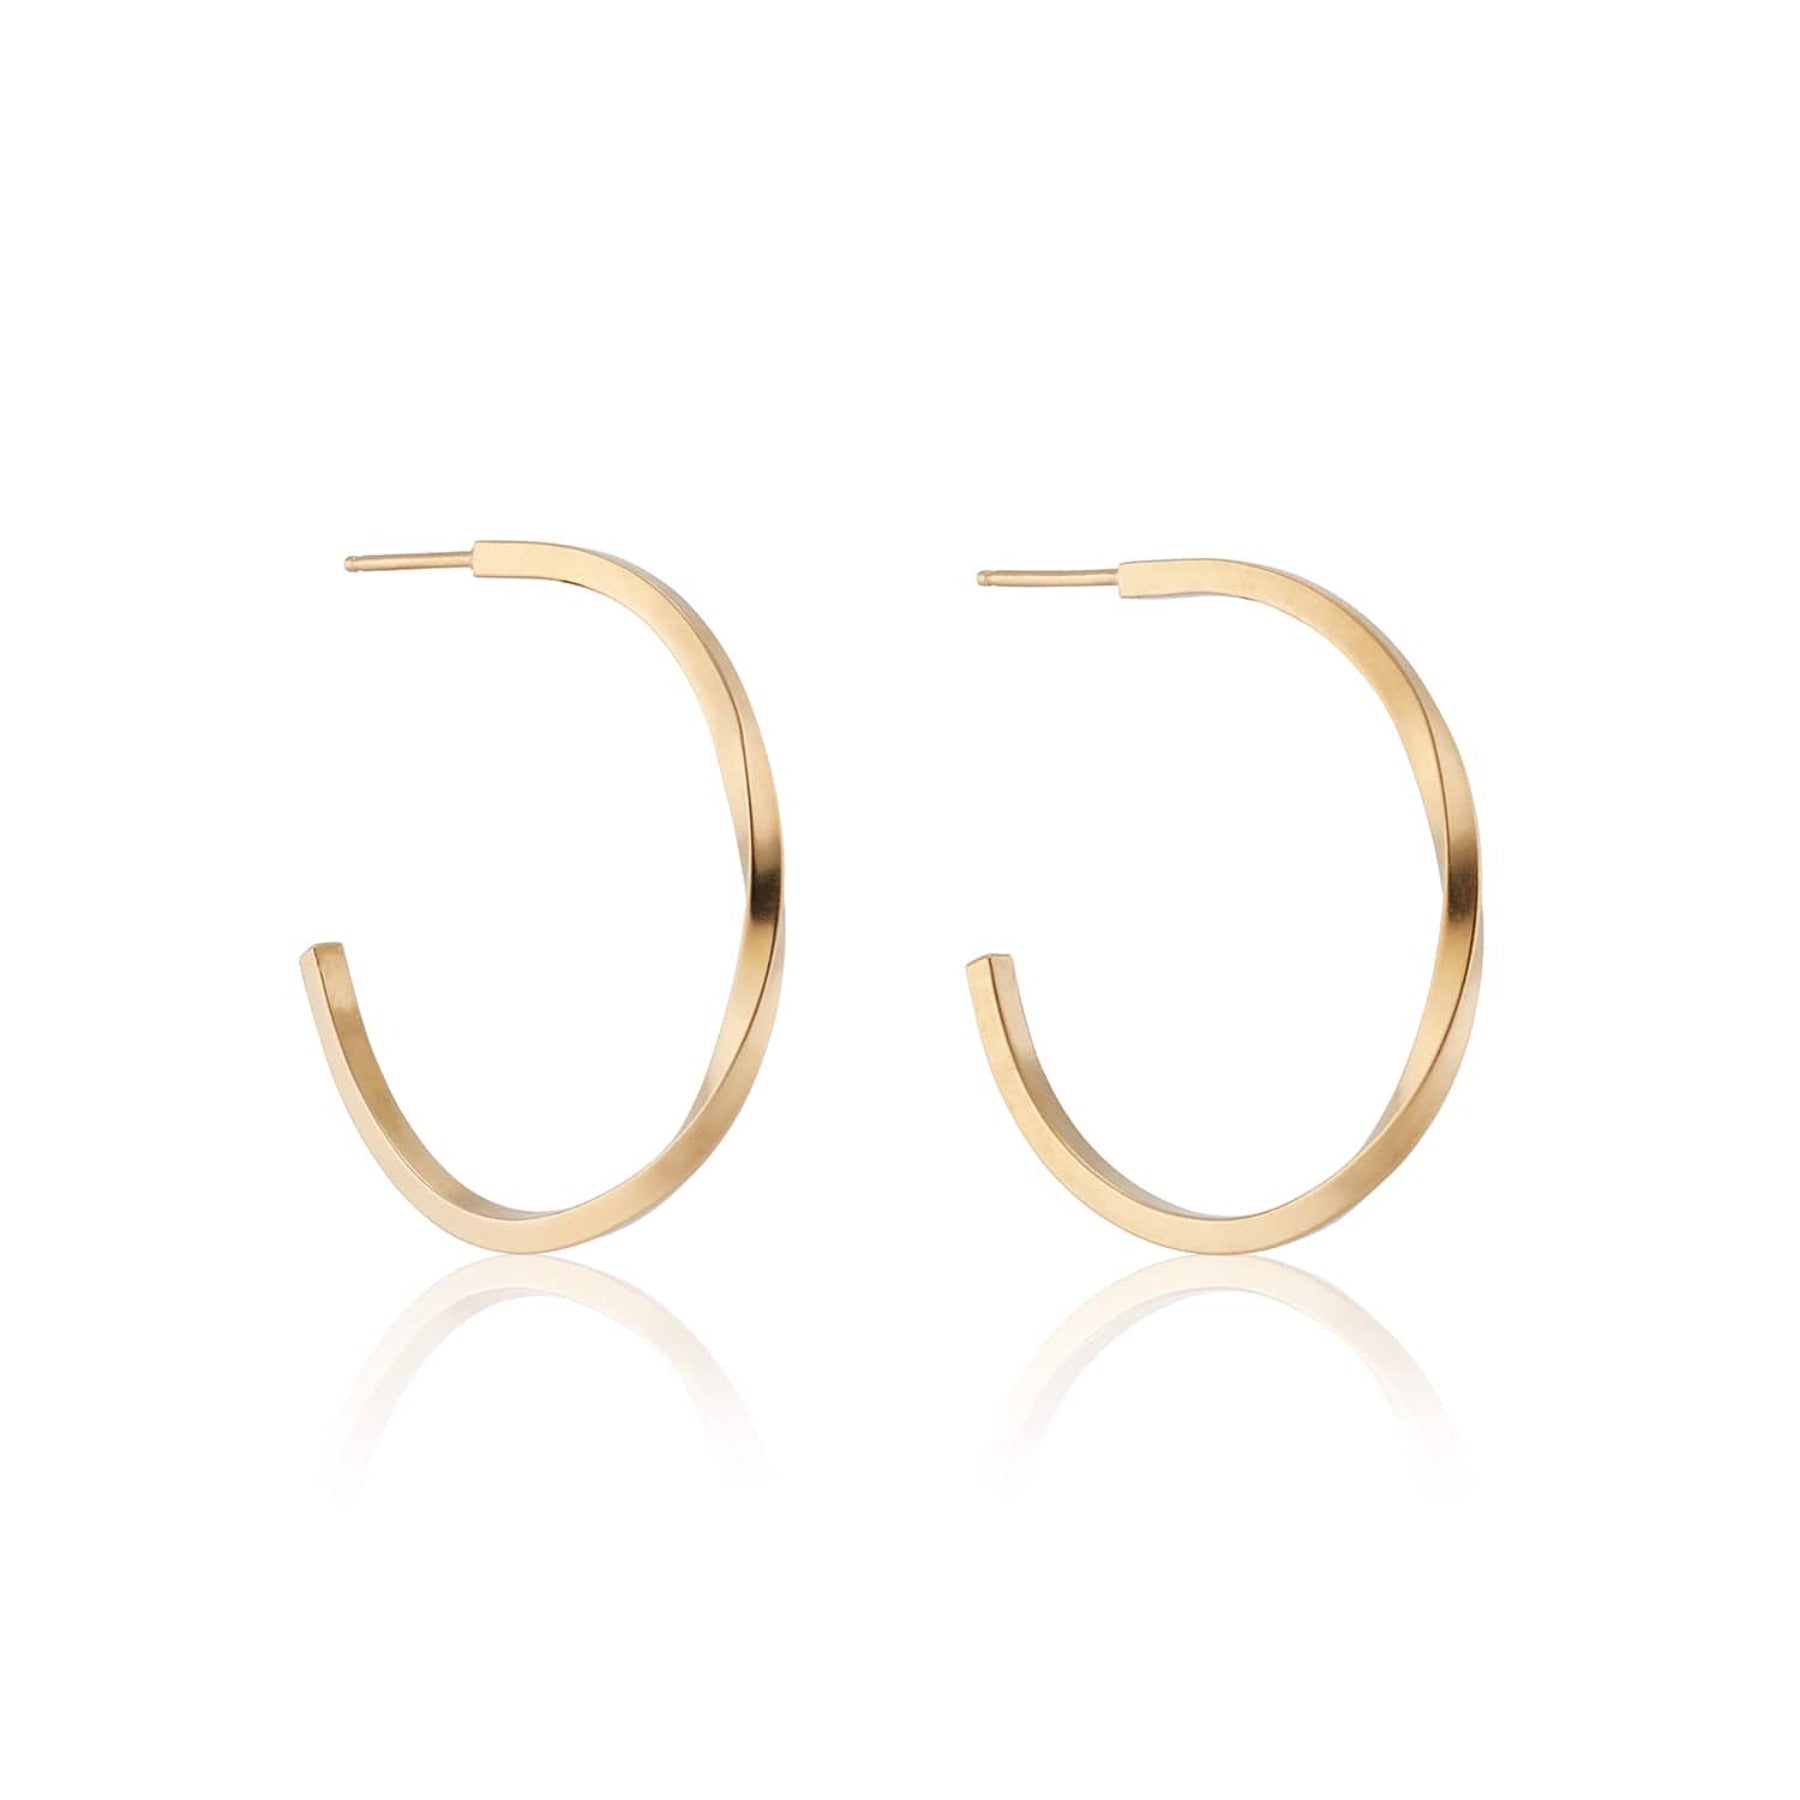 Minimalist medium sized hoop earrings with a single twist in 18k gold vermeil.